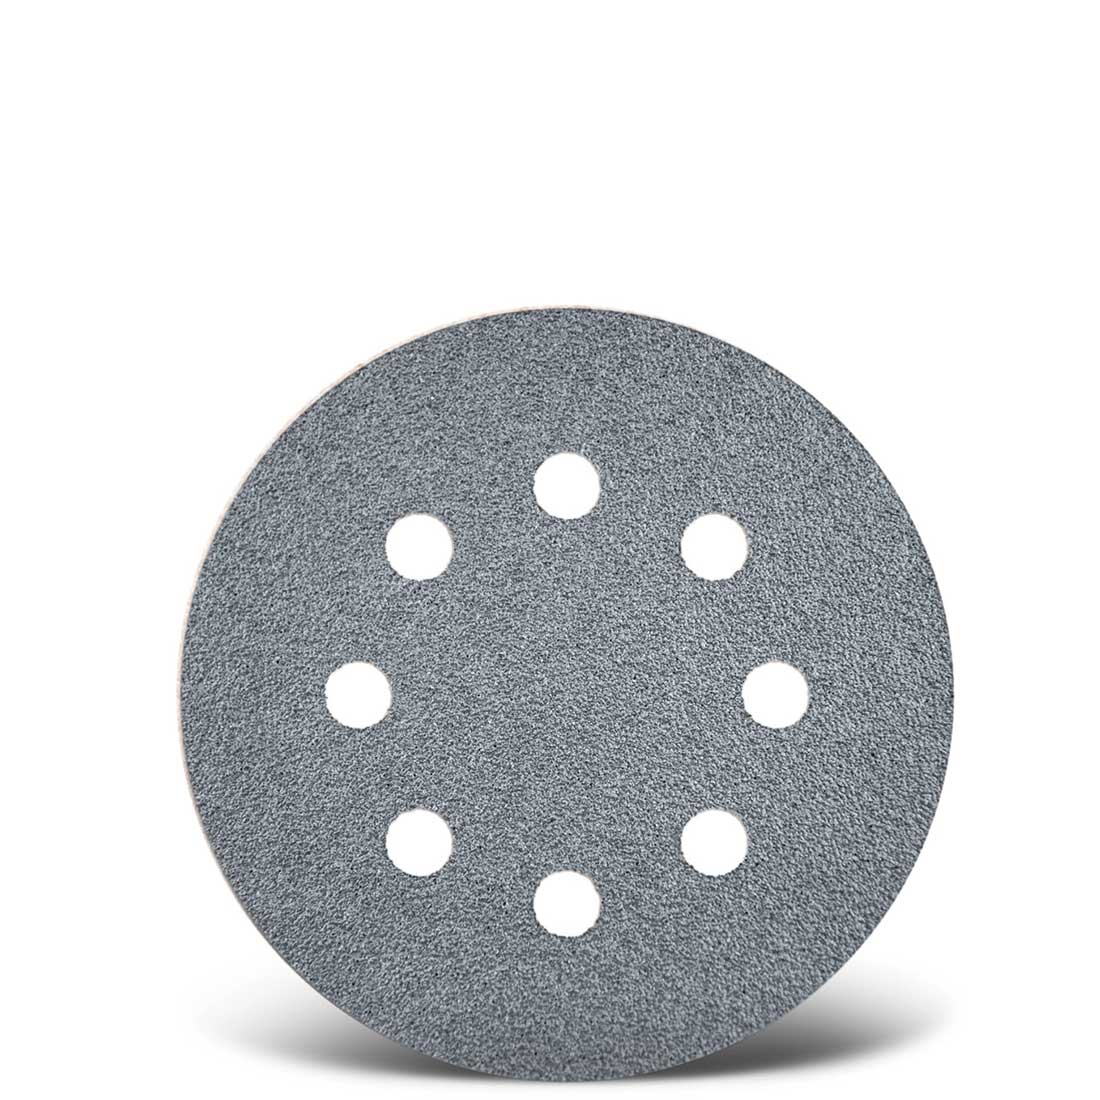 Dischi abrasivi velcrati MENZER per levigatrici rotorbitali, G40–400, Ø 115 mm / 8 fori / corindone semi-friabile con stearato